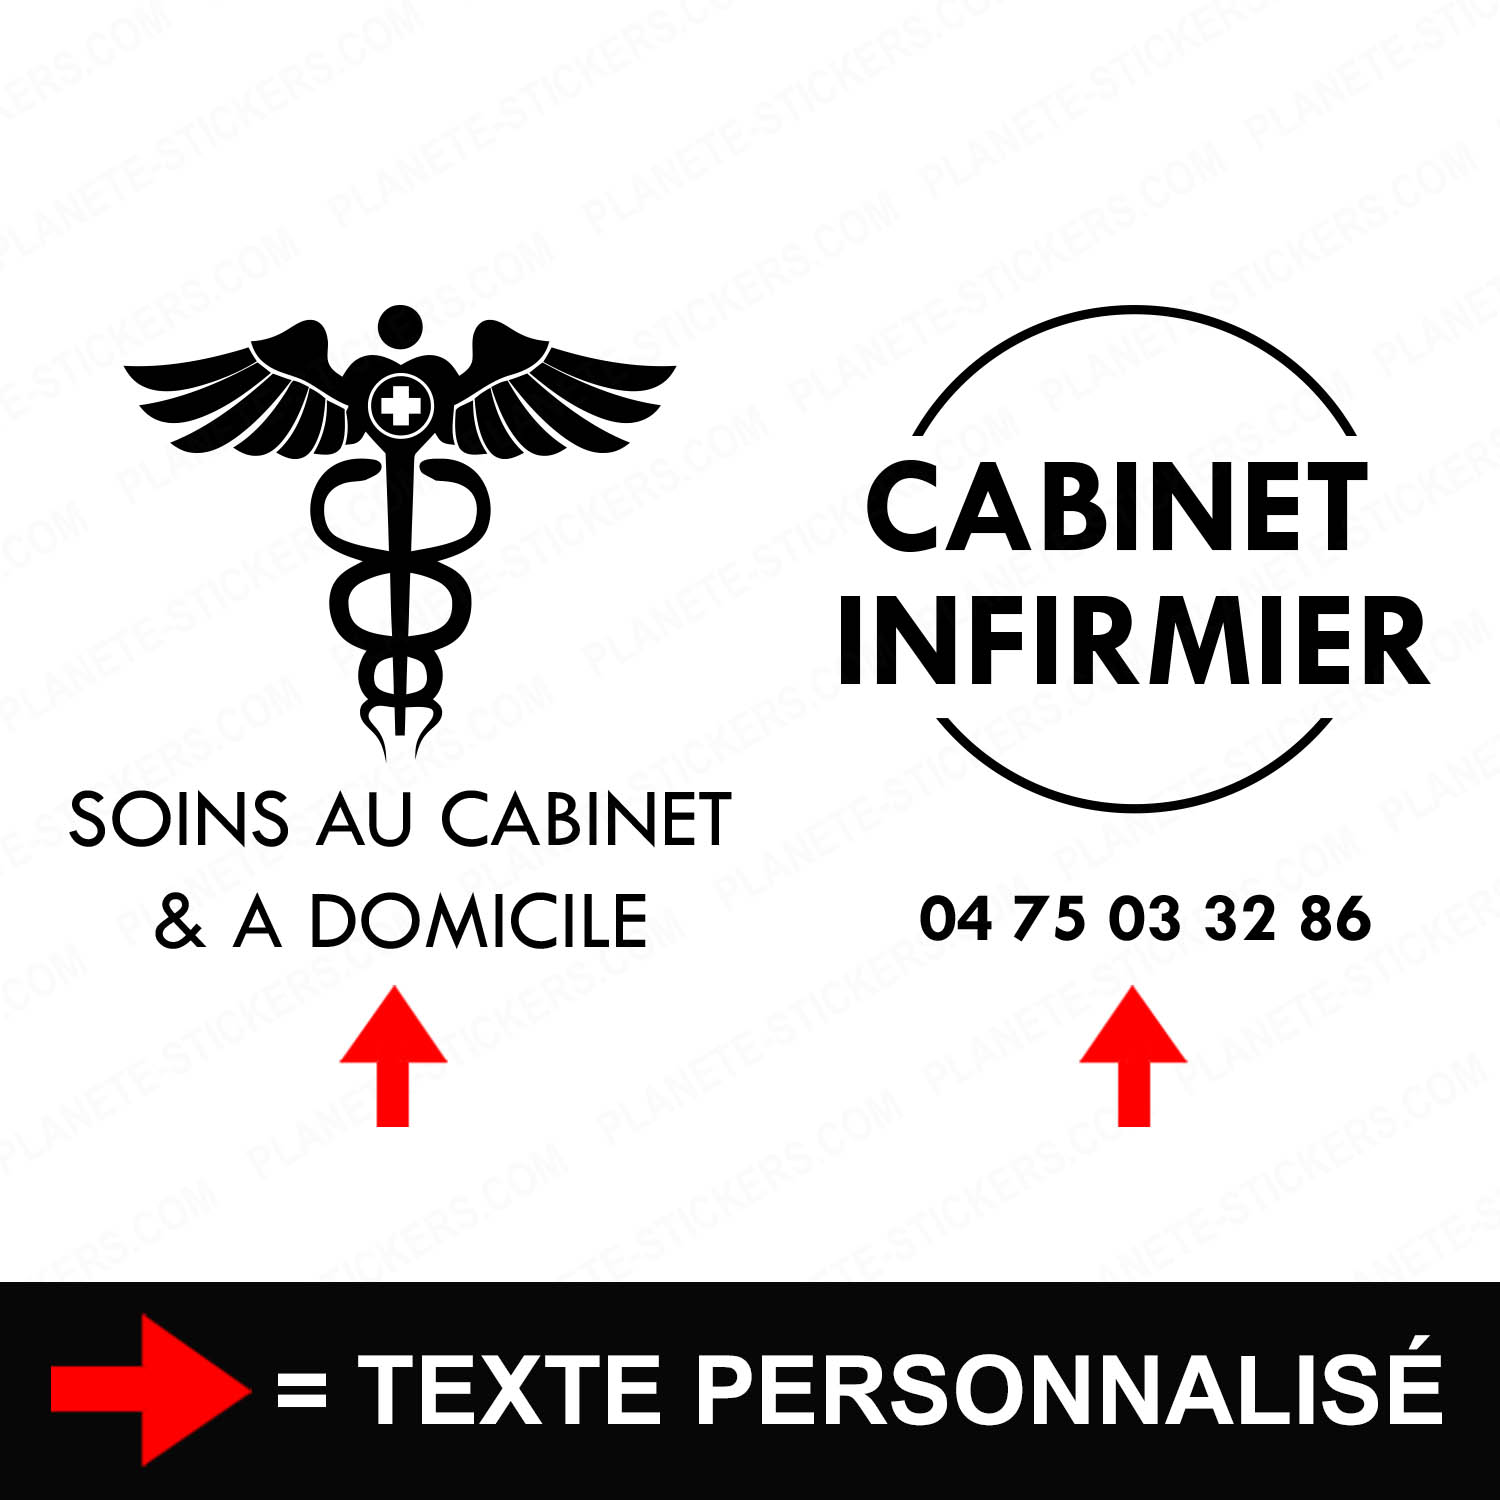 ref2infirmiervitrine-stickers-cabinet-vitrine-sticker-personnalisé-autocollant-pro-soins-domicile-liberal-croix-professionnel-2